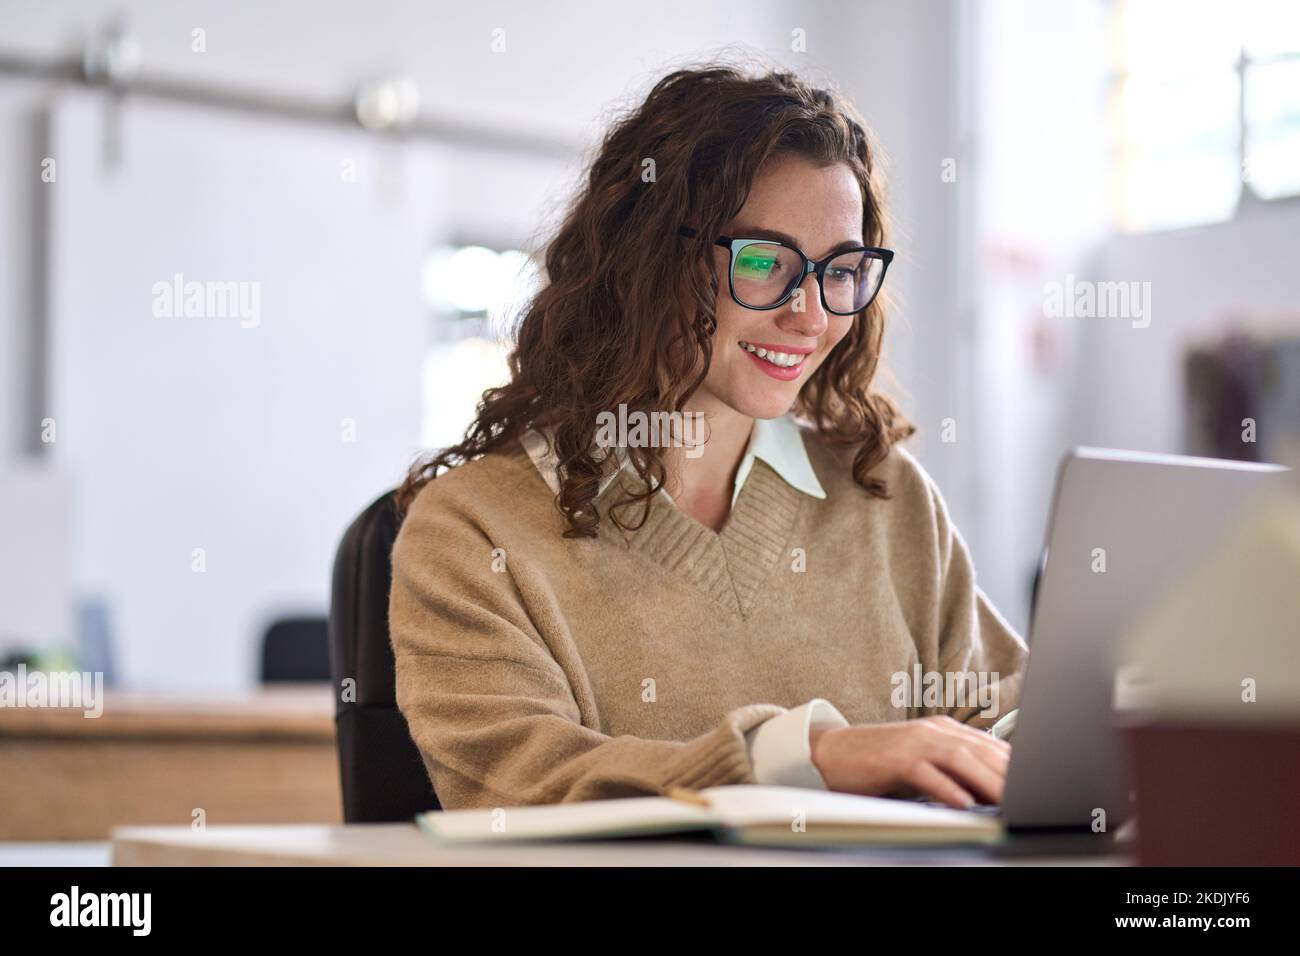 Junge glückliche Angestellte oder Studentin, die mit einem Laptop am Schreibtisch sitzt. Stockfoto